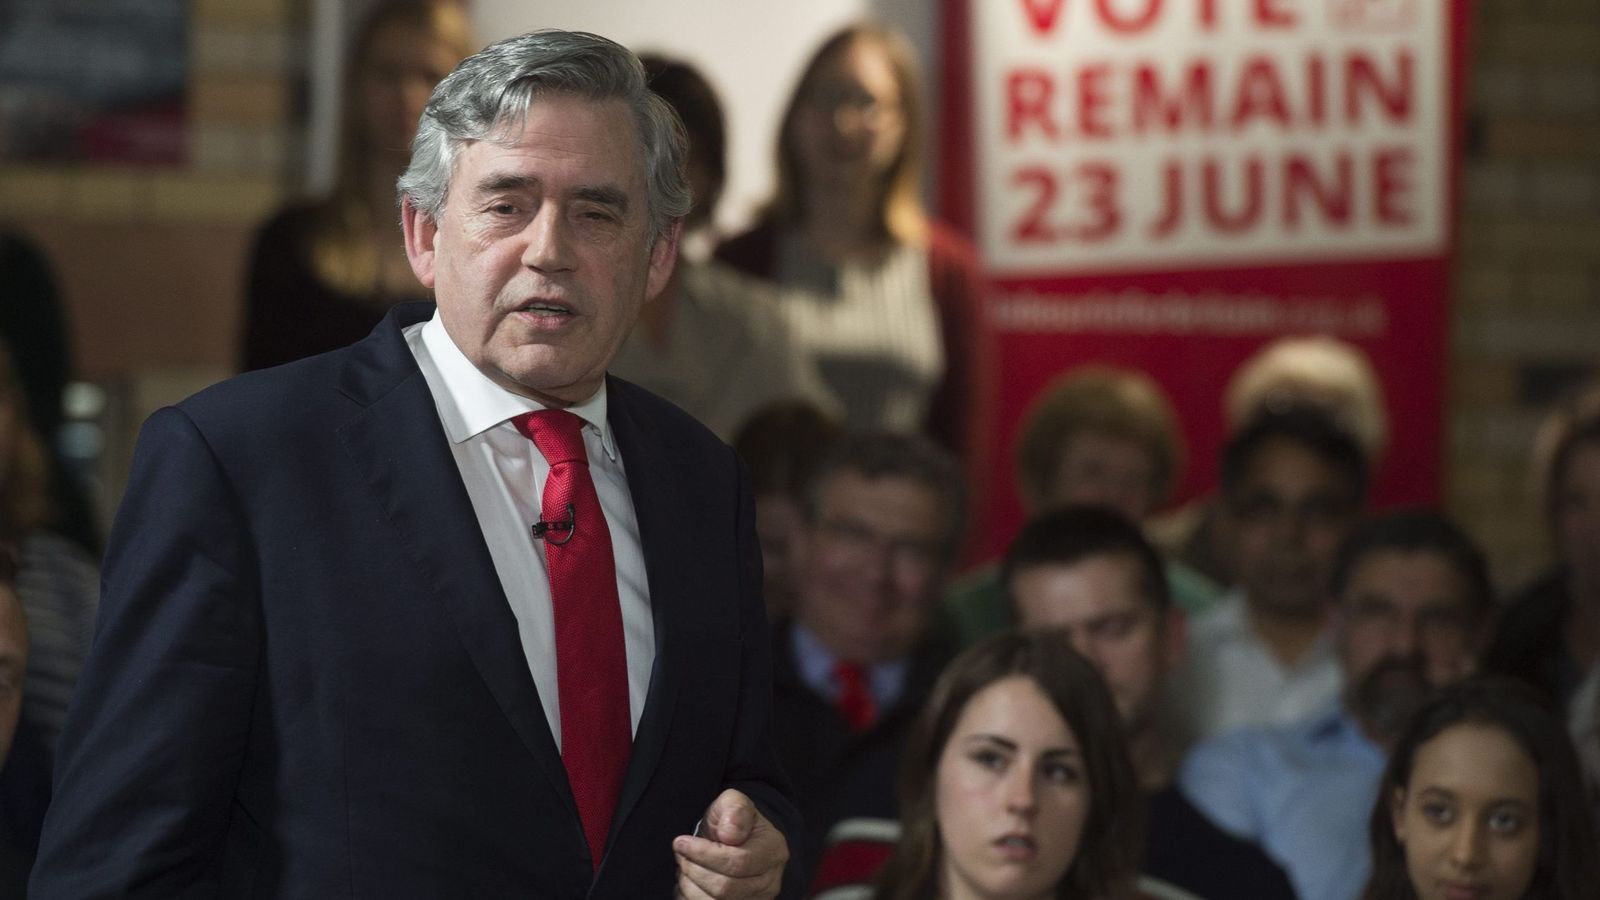 Foto: El exprimer ministro del Reino Unido, Gordon Brown (i), pronuncia un discurso durante el evento "Remain In" celebrado en Leicester, Reino Unido (Efe).